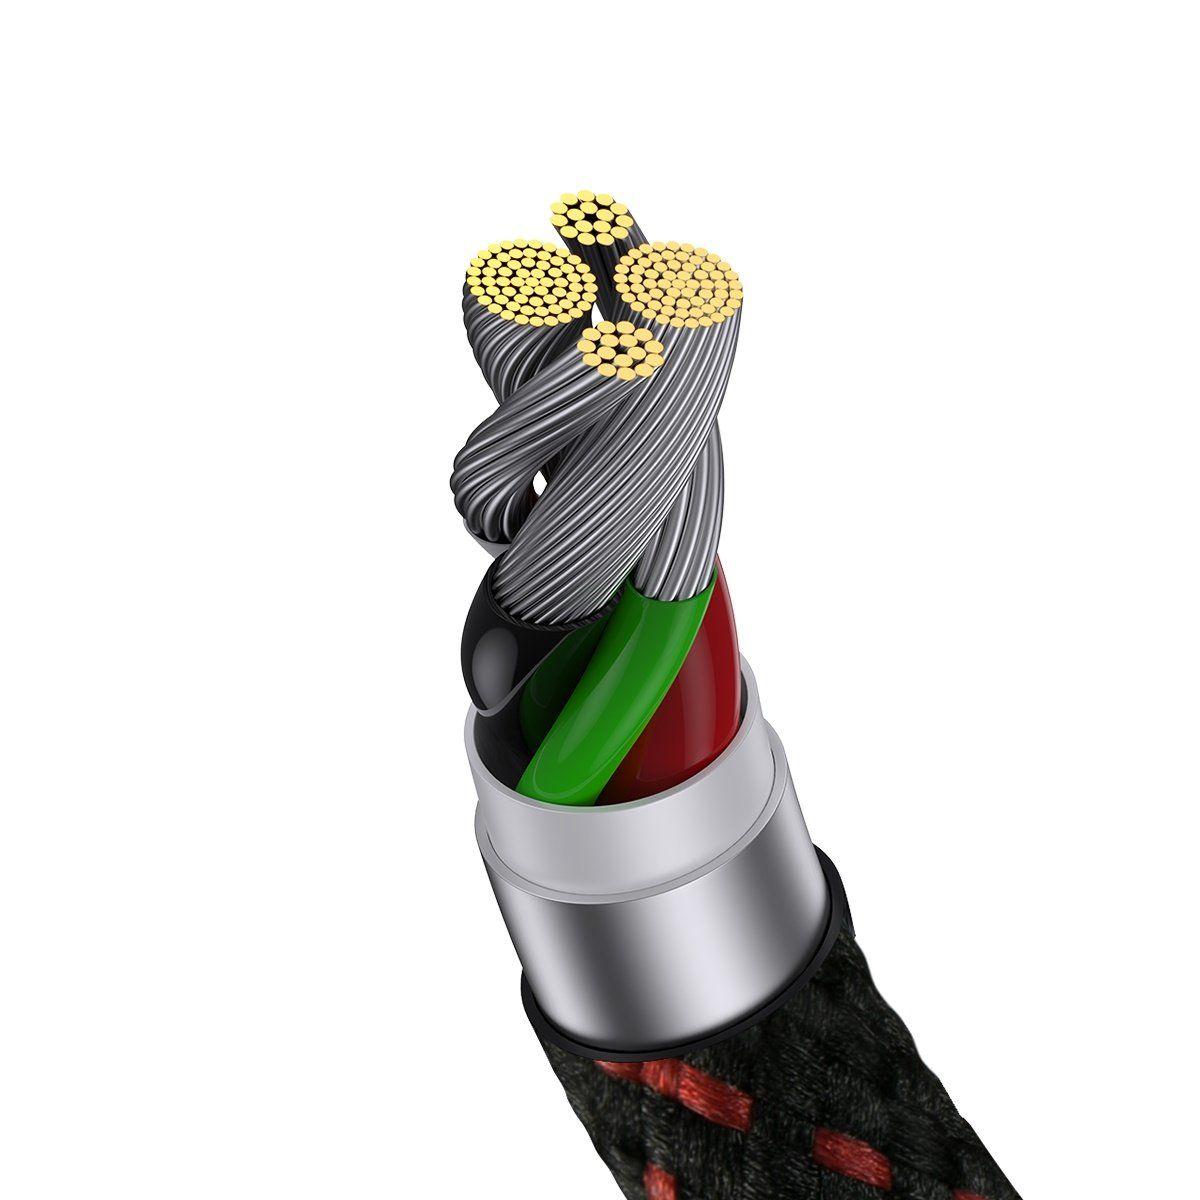 Baseus MVP 2 Elbow kątowy kabel przewód z bocznym wtykiem USB / Lightning 1m 2.4A czerwony (CAVP000020)